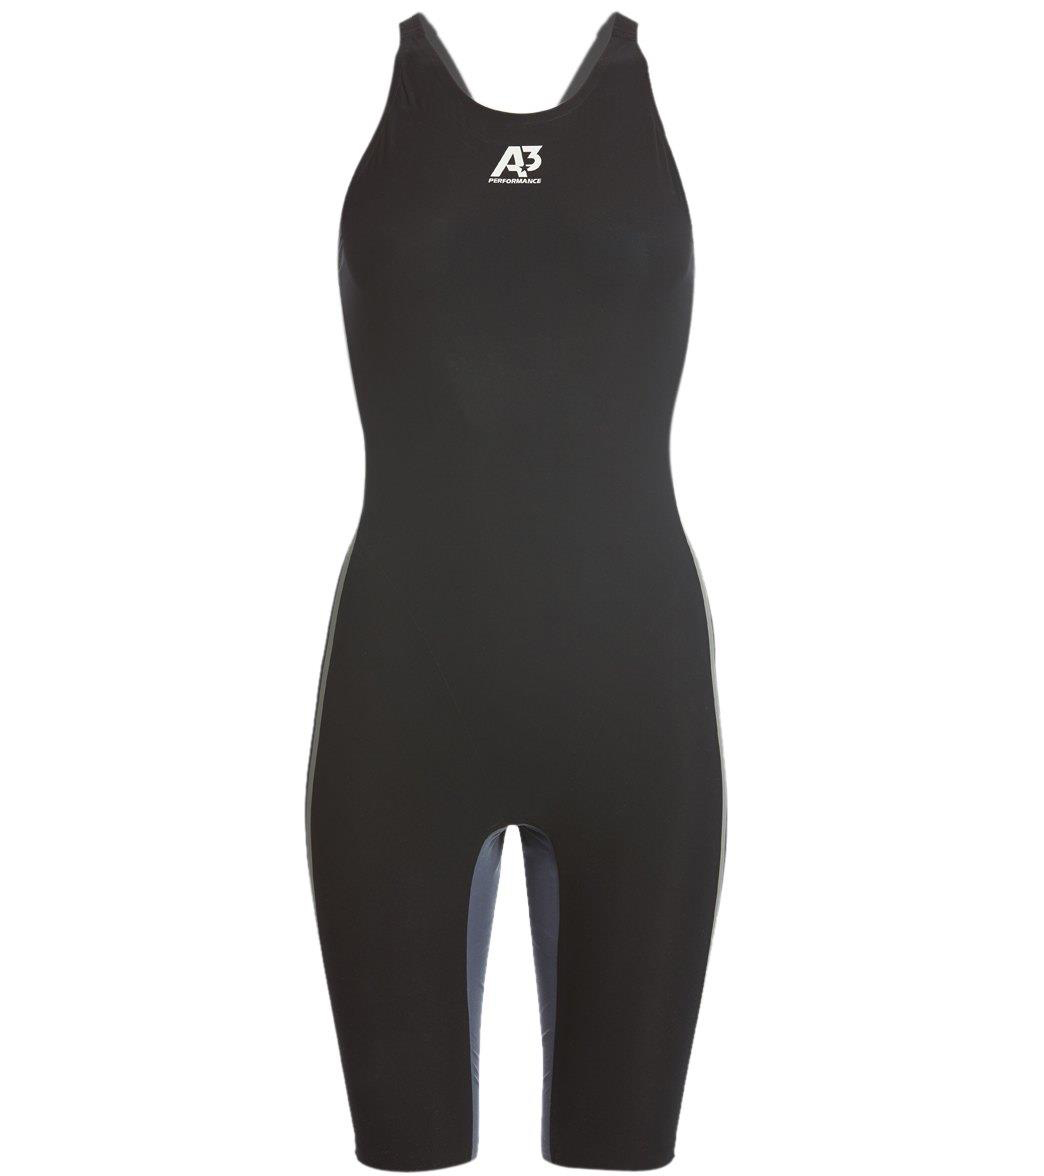 A3 Performance Women's Vici Open Back Tech Suit Swimsuit - Black 30 Elastane/Polyamide - Swimoutlet.com